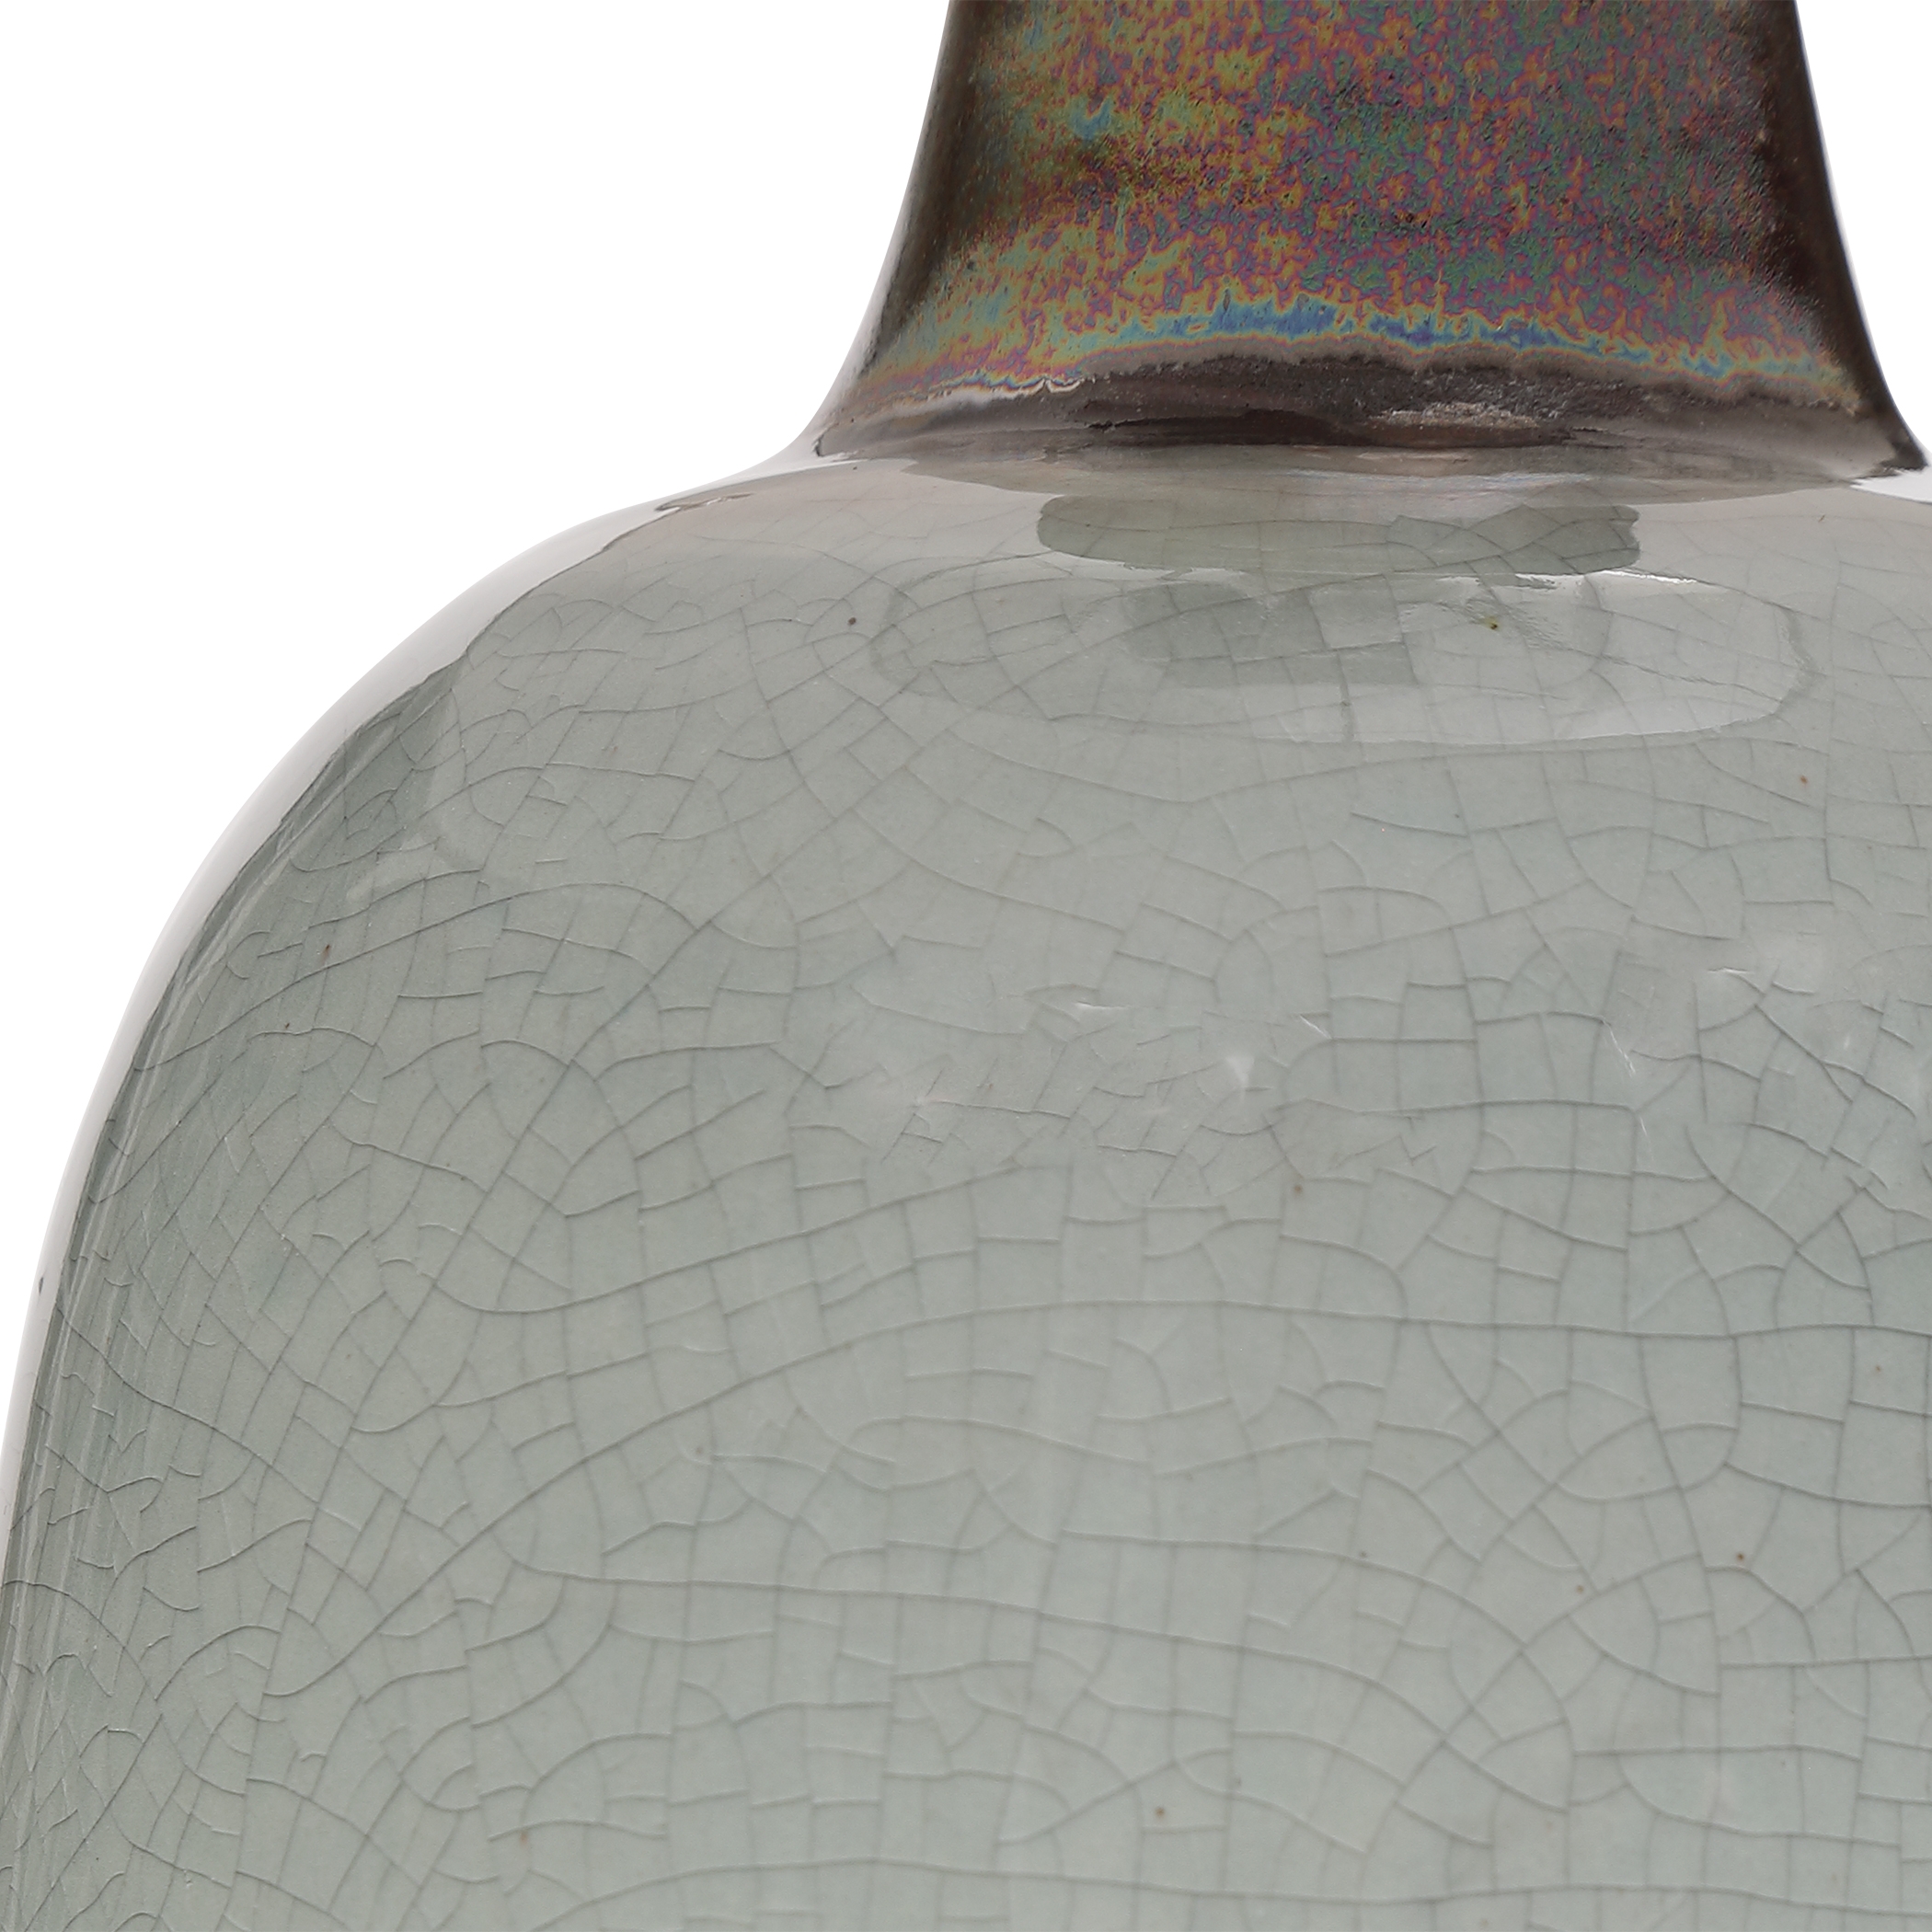 Ceramic Glazed Table Lamp, Turquoise, 24" - Image 4